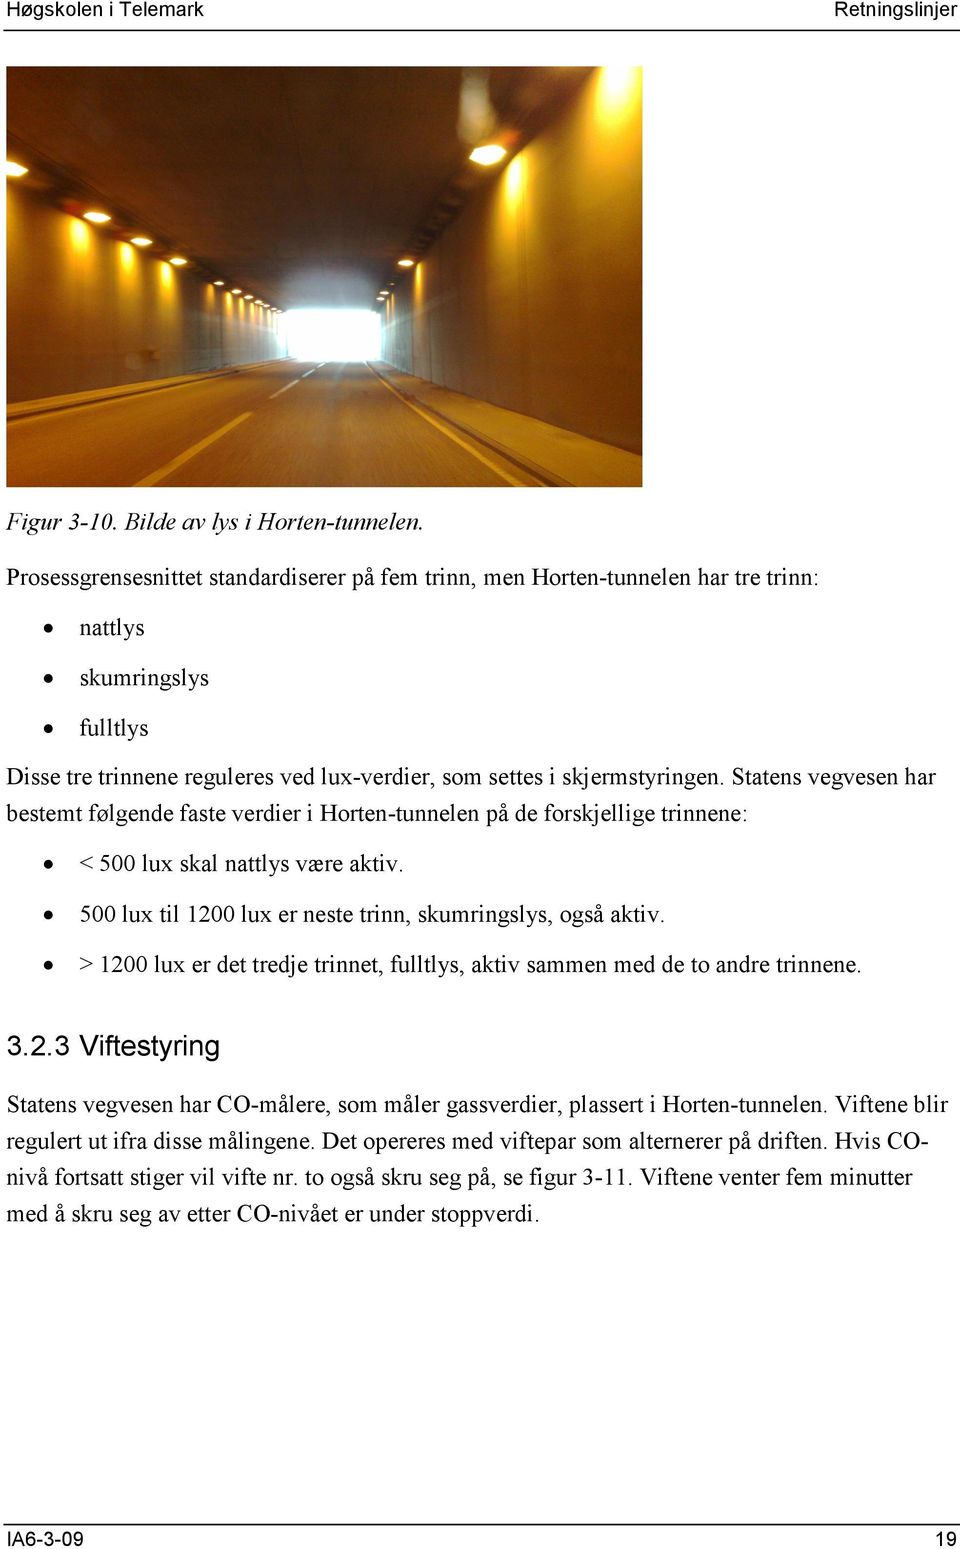 Statens vegvesen har bestemt følgende faste verdier i Horten-tunnelen på de forskjellige trinnene: < 500 lux skal nattlys være aktiv. 500 lux til 1200 lux er neste trinn, skumringslys, også aktiv.